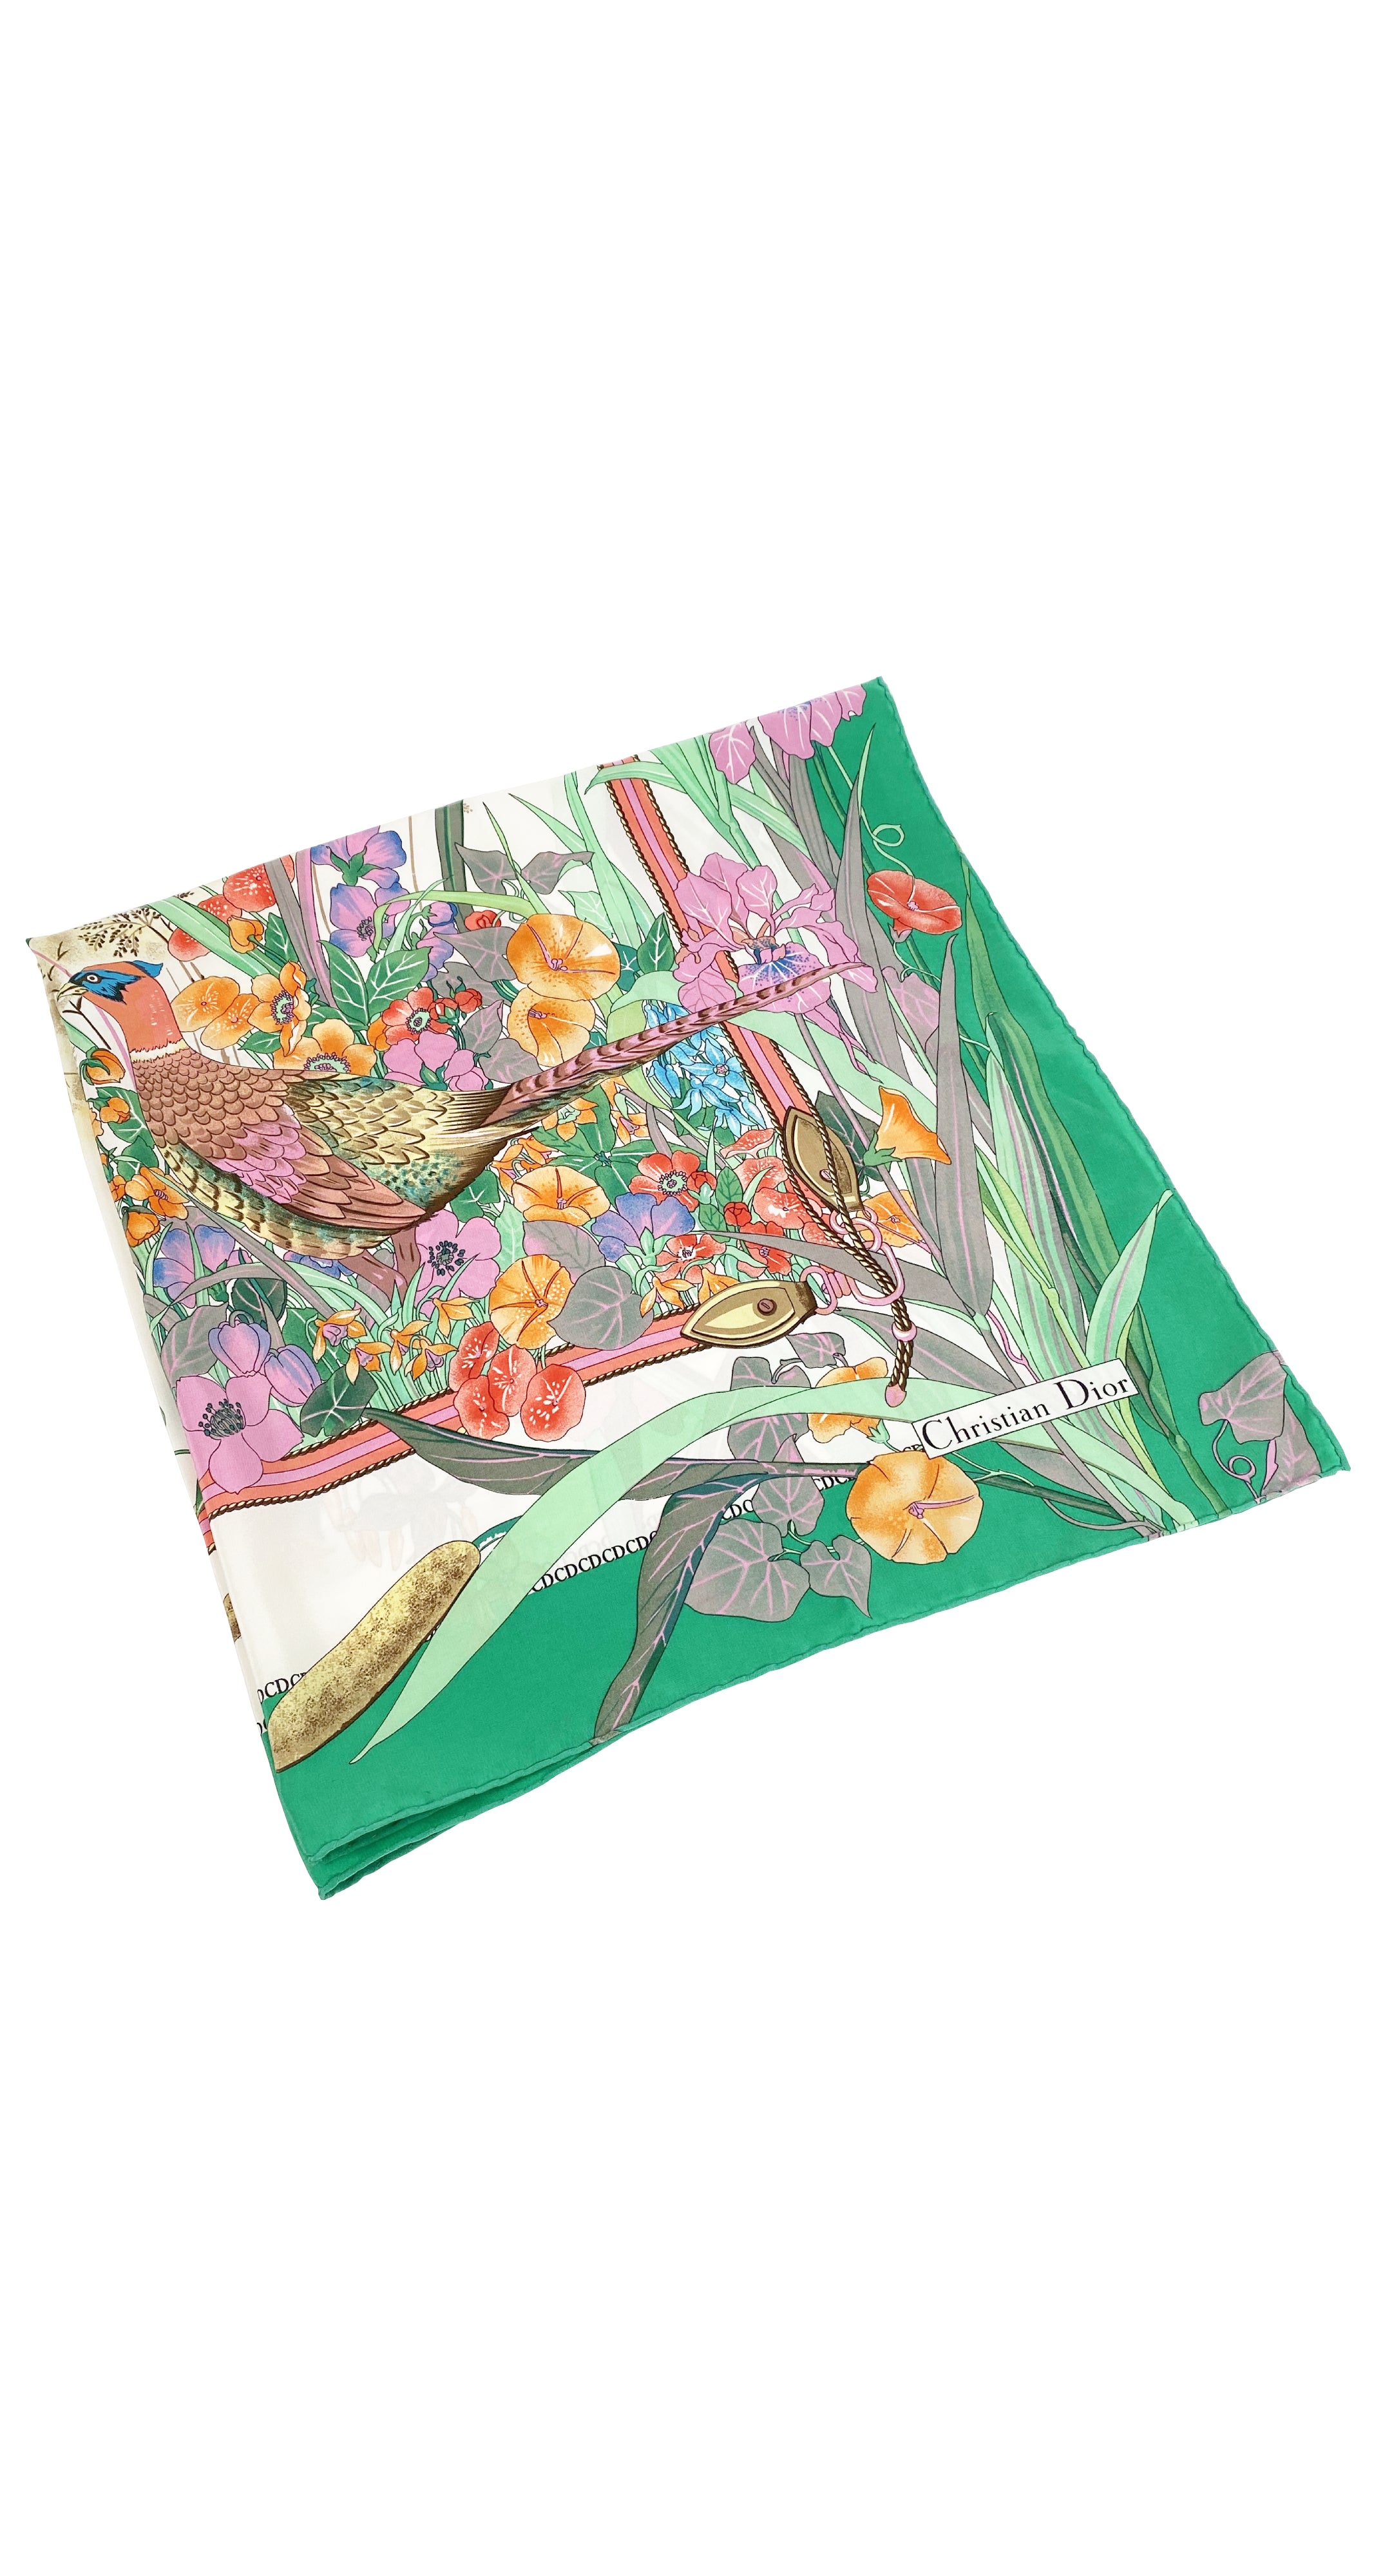 1980s NIB Pheasant Floral Print Silk Scarf